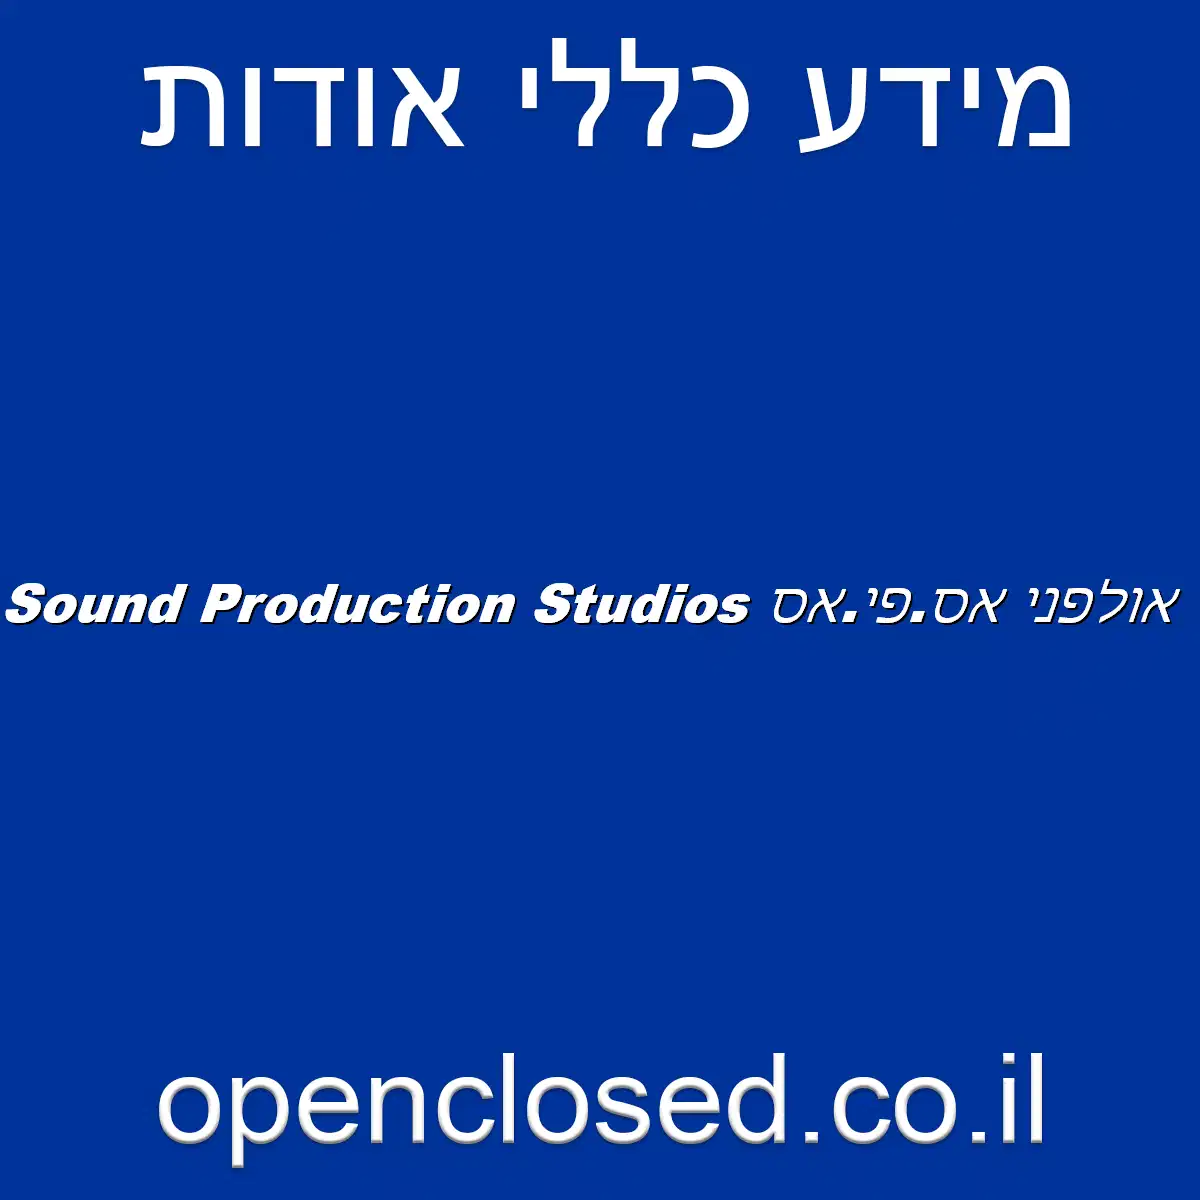 SPS Sound Production Studios אולפני אס.פי.אס